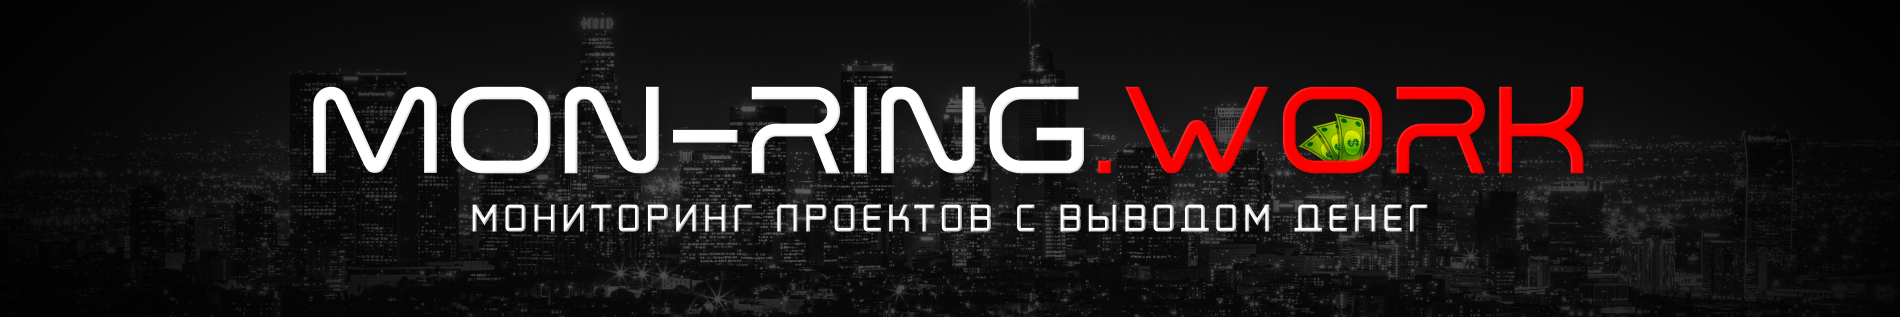 Логотип Mon-Ring.work